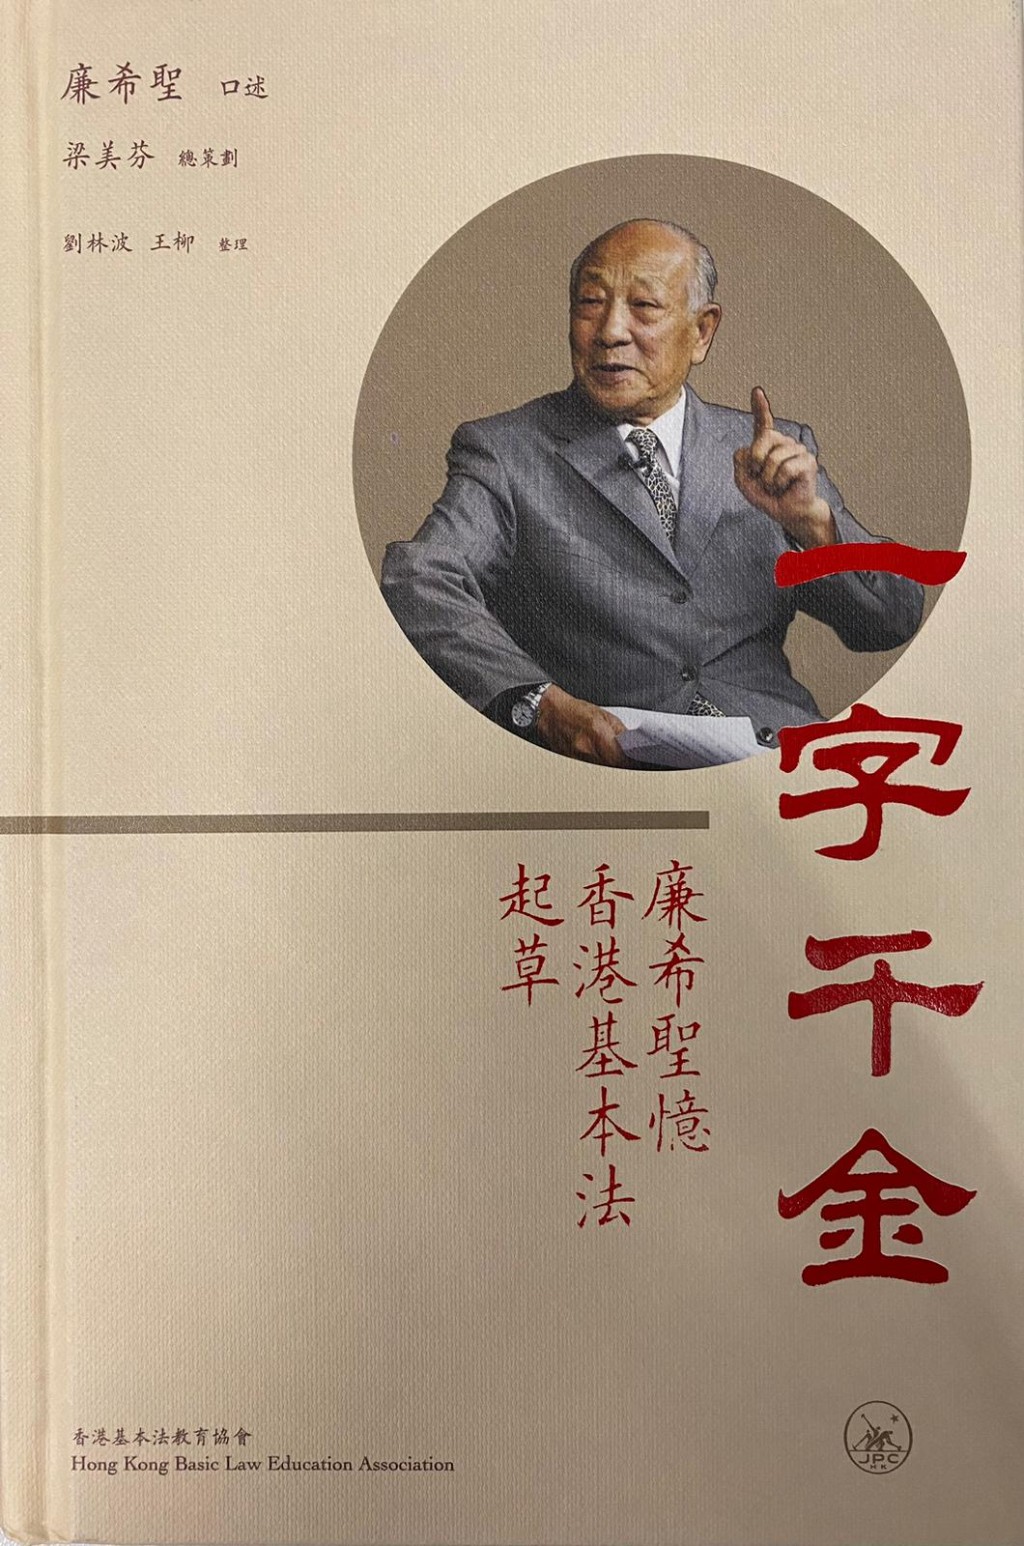 92歲的廉希聖在港推出口述新書《一字千金——廉希聖憶香港基本法起草》。